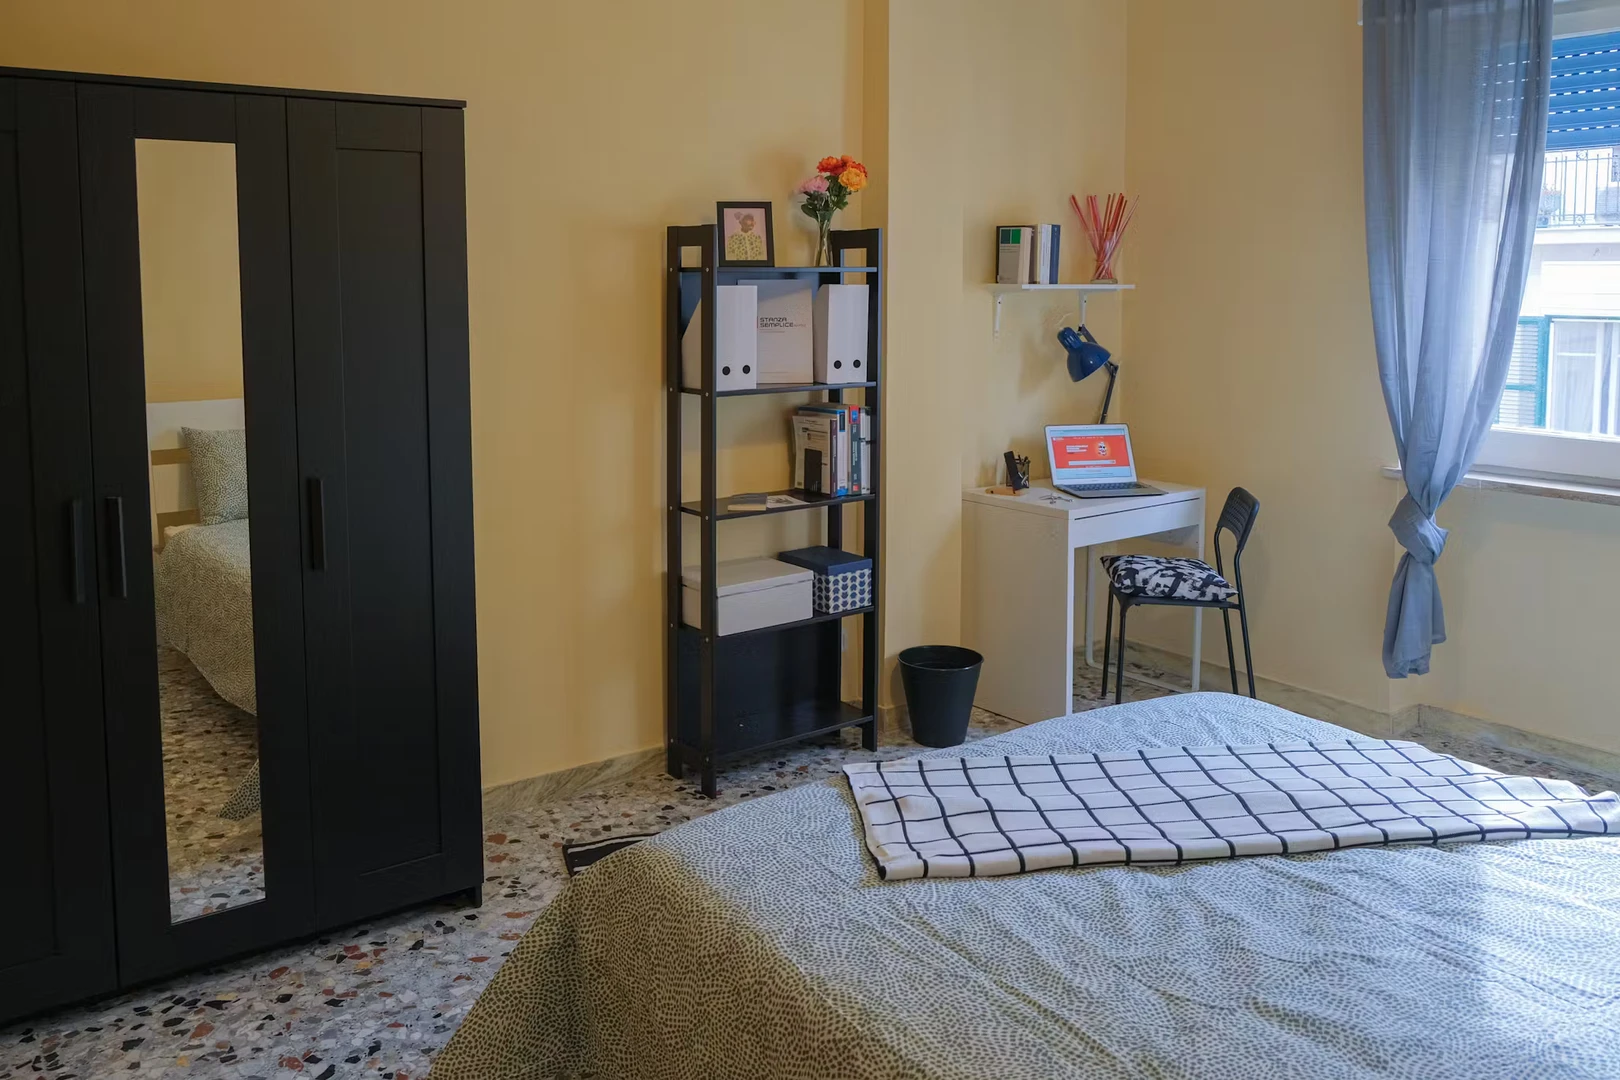 Alquiler de habitación en piso compartido en Nápoles